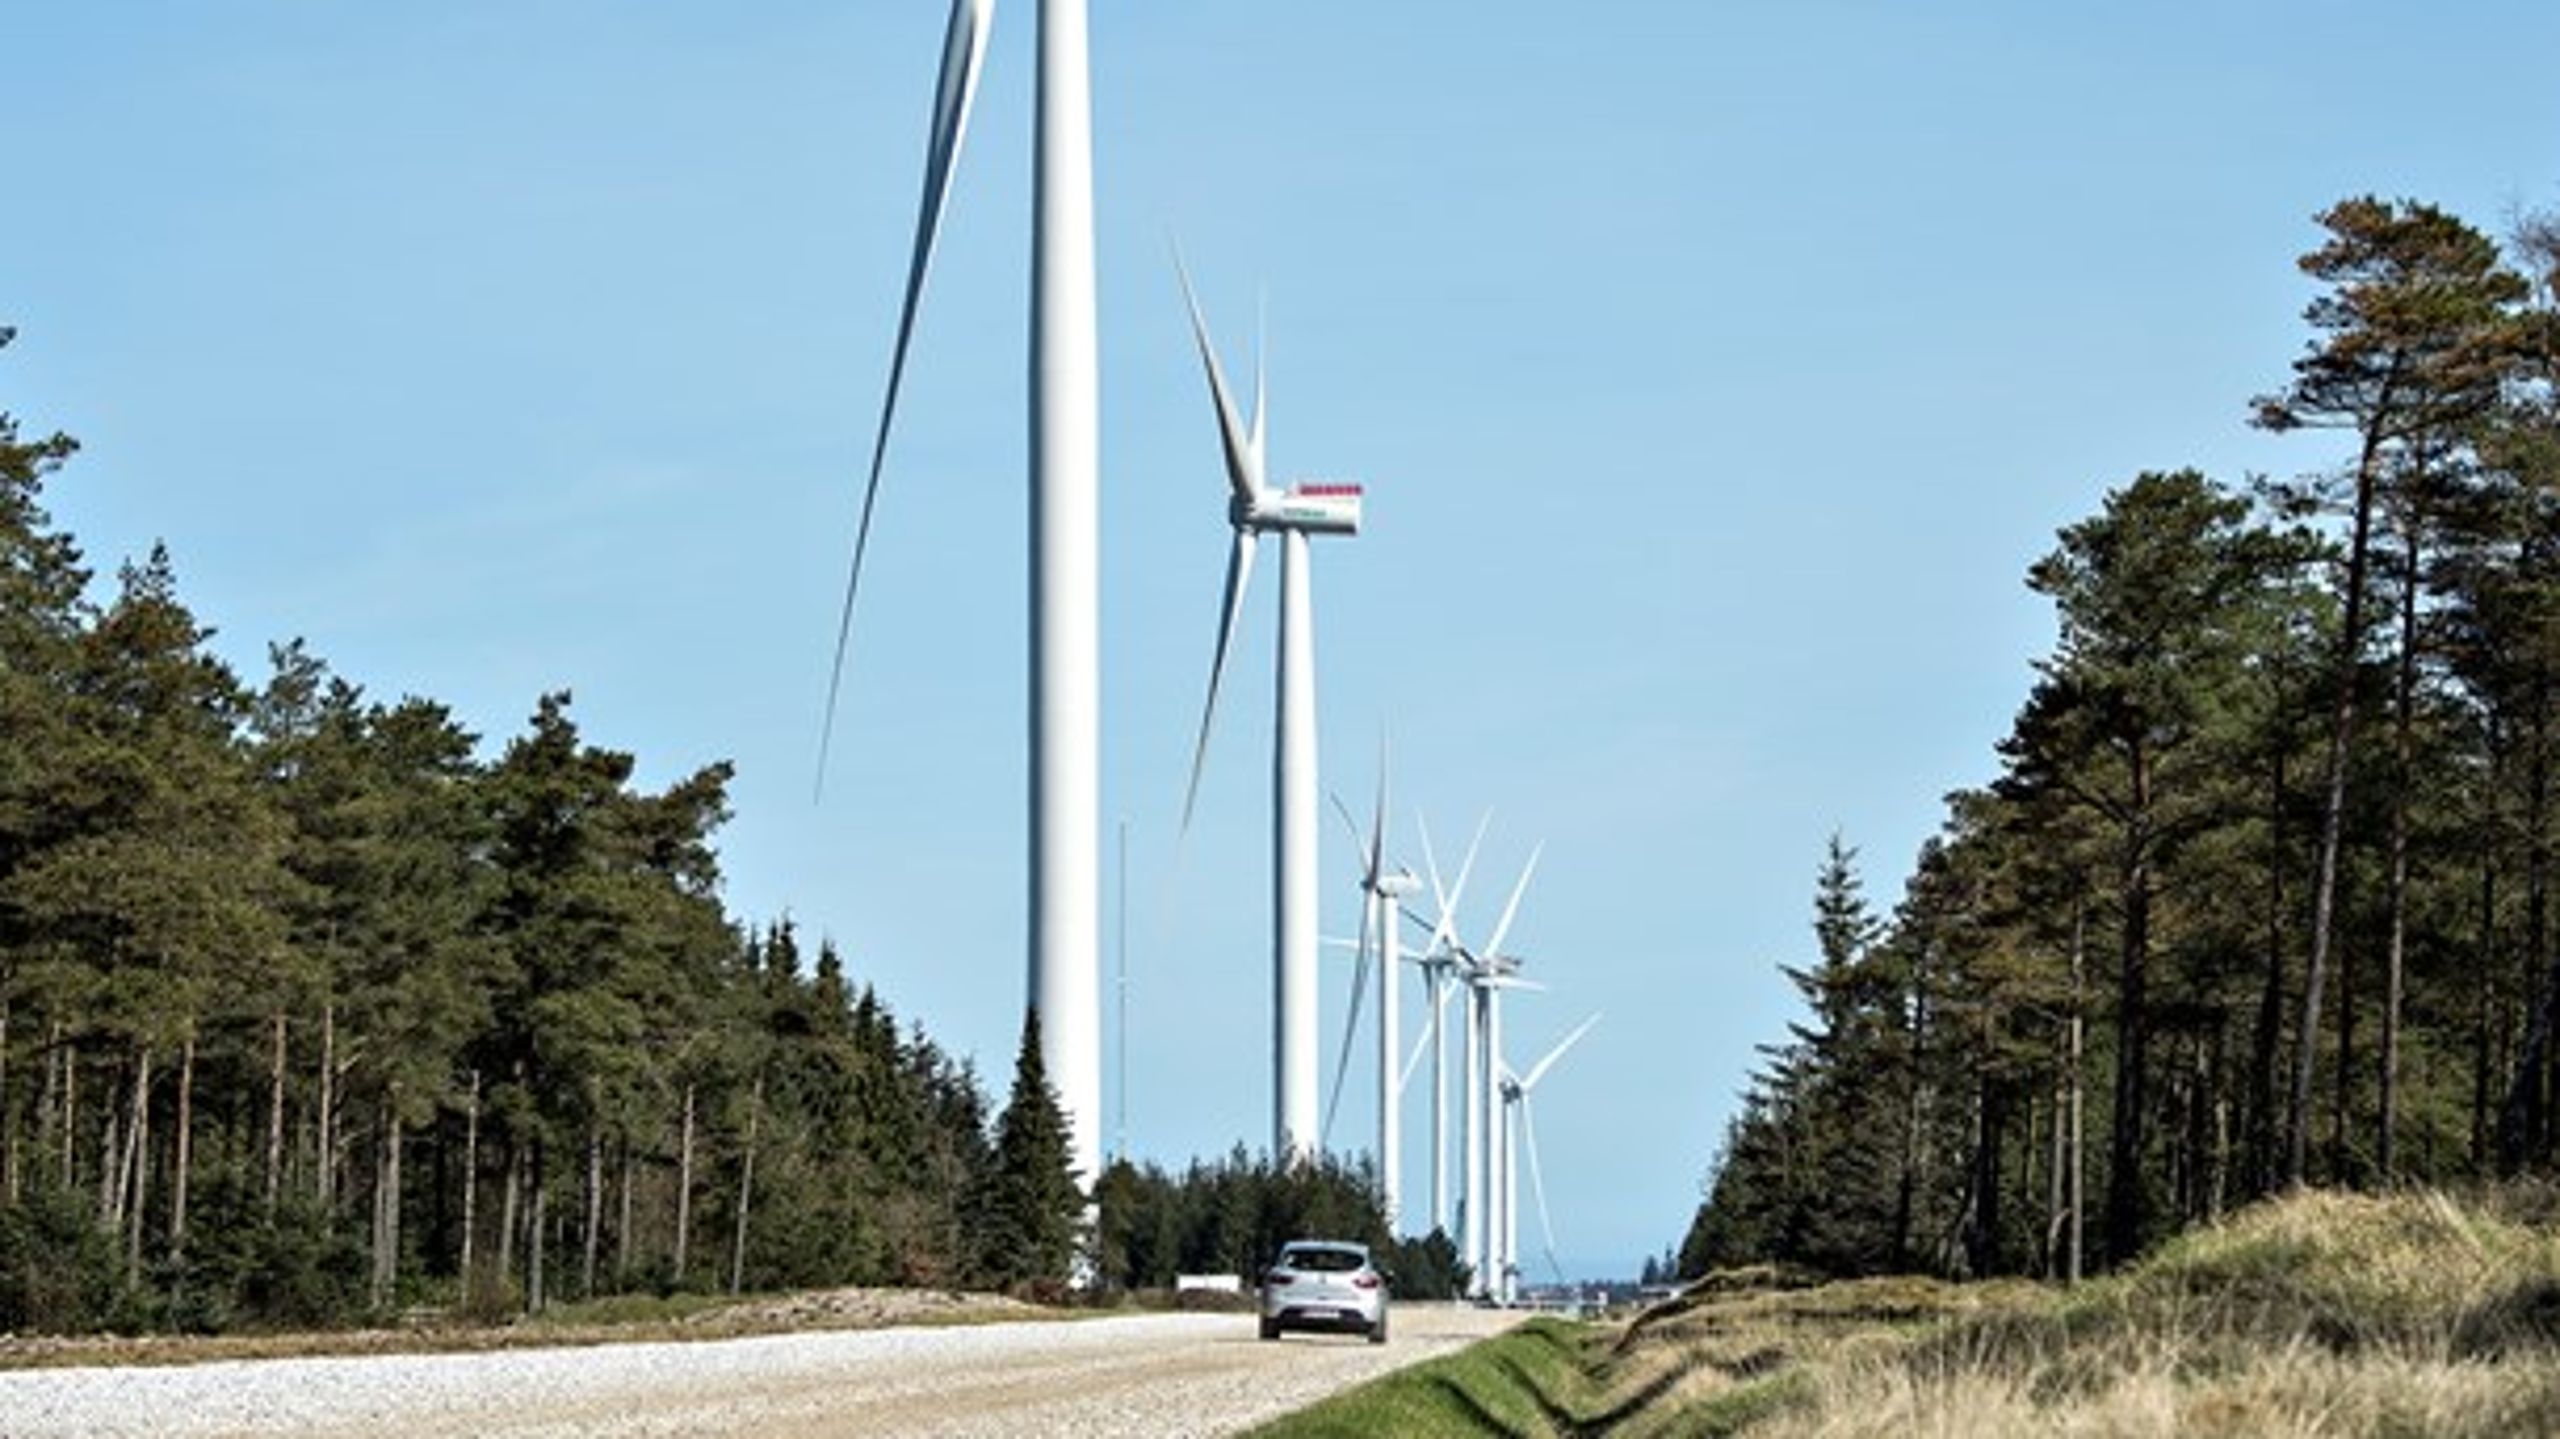 Regeringen vil gøre det nemmere at opstille vindmøller i skovene. Her er en vindmølle fra Testcenteret Østerild i Nordjylland.